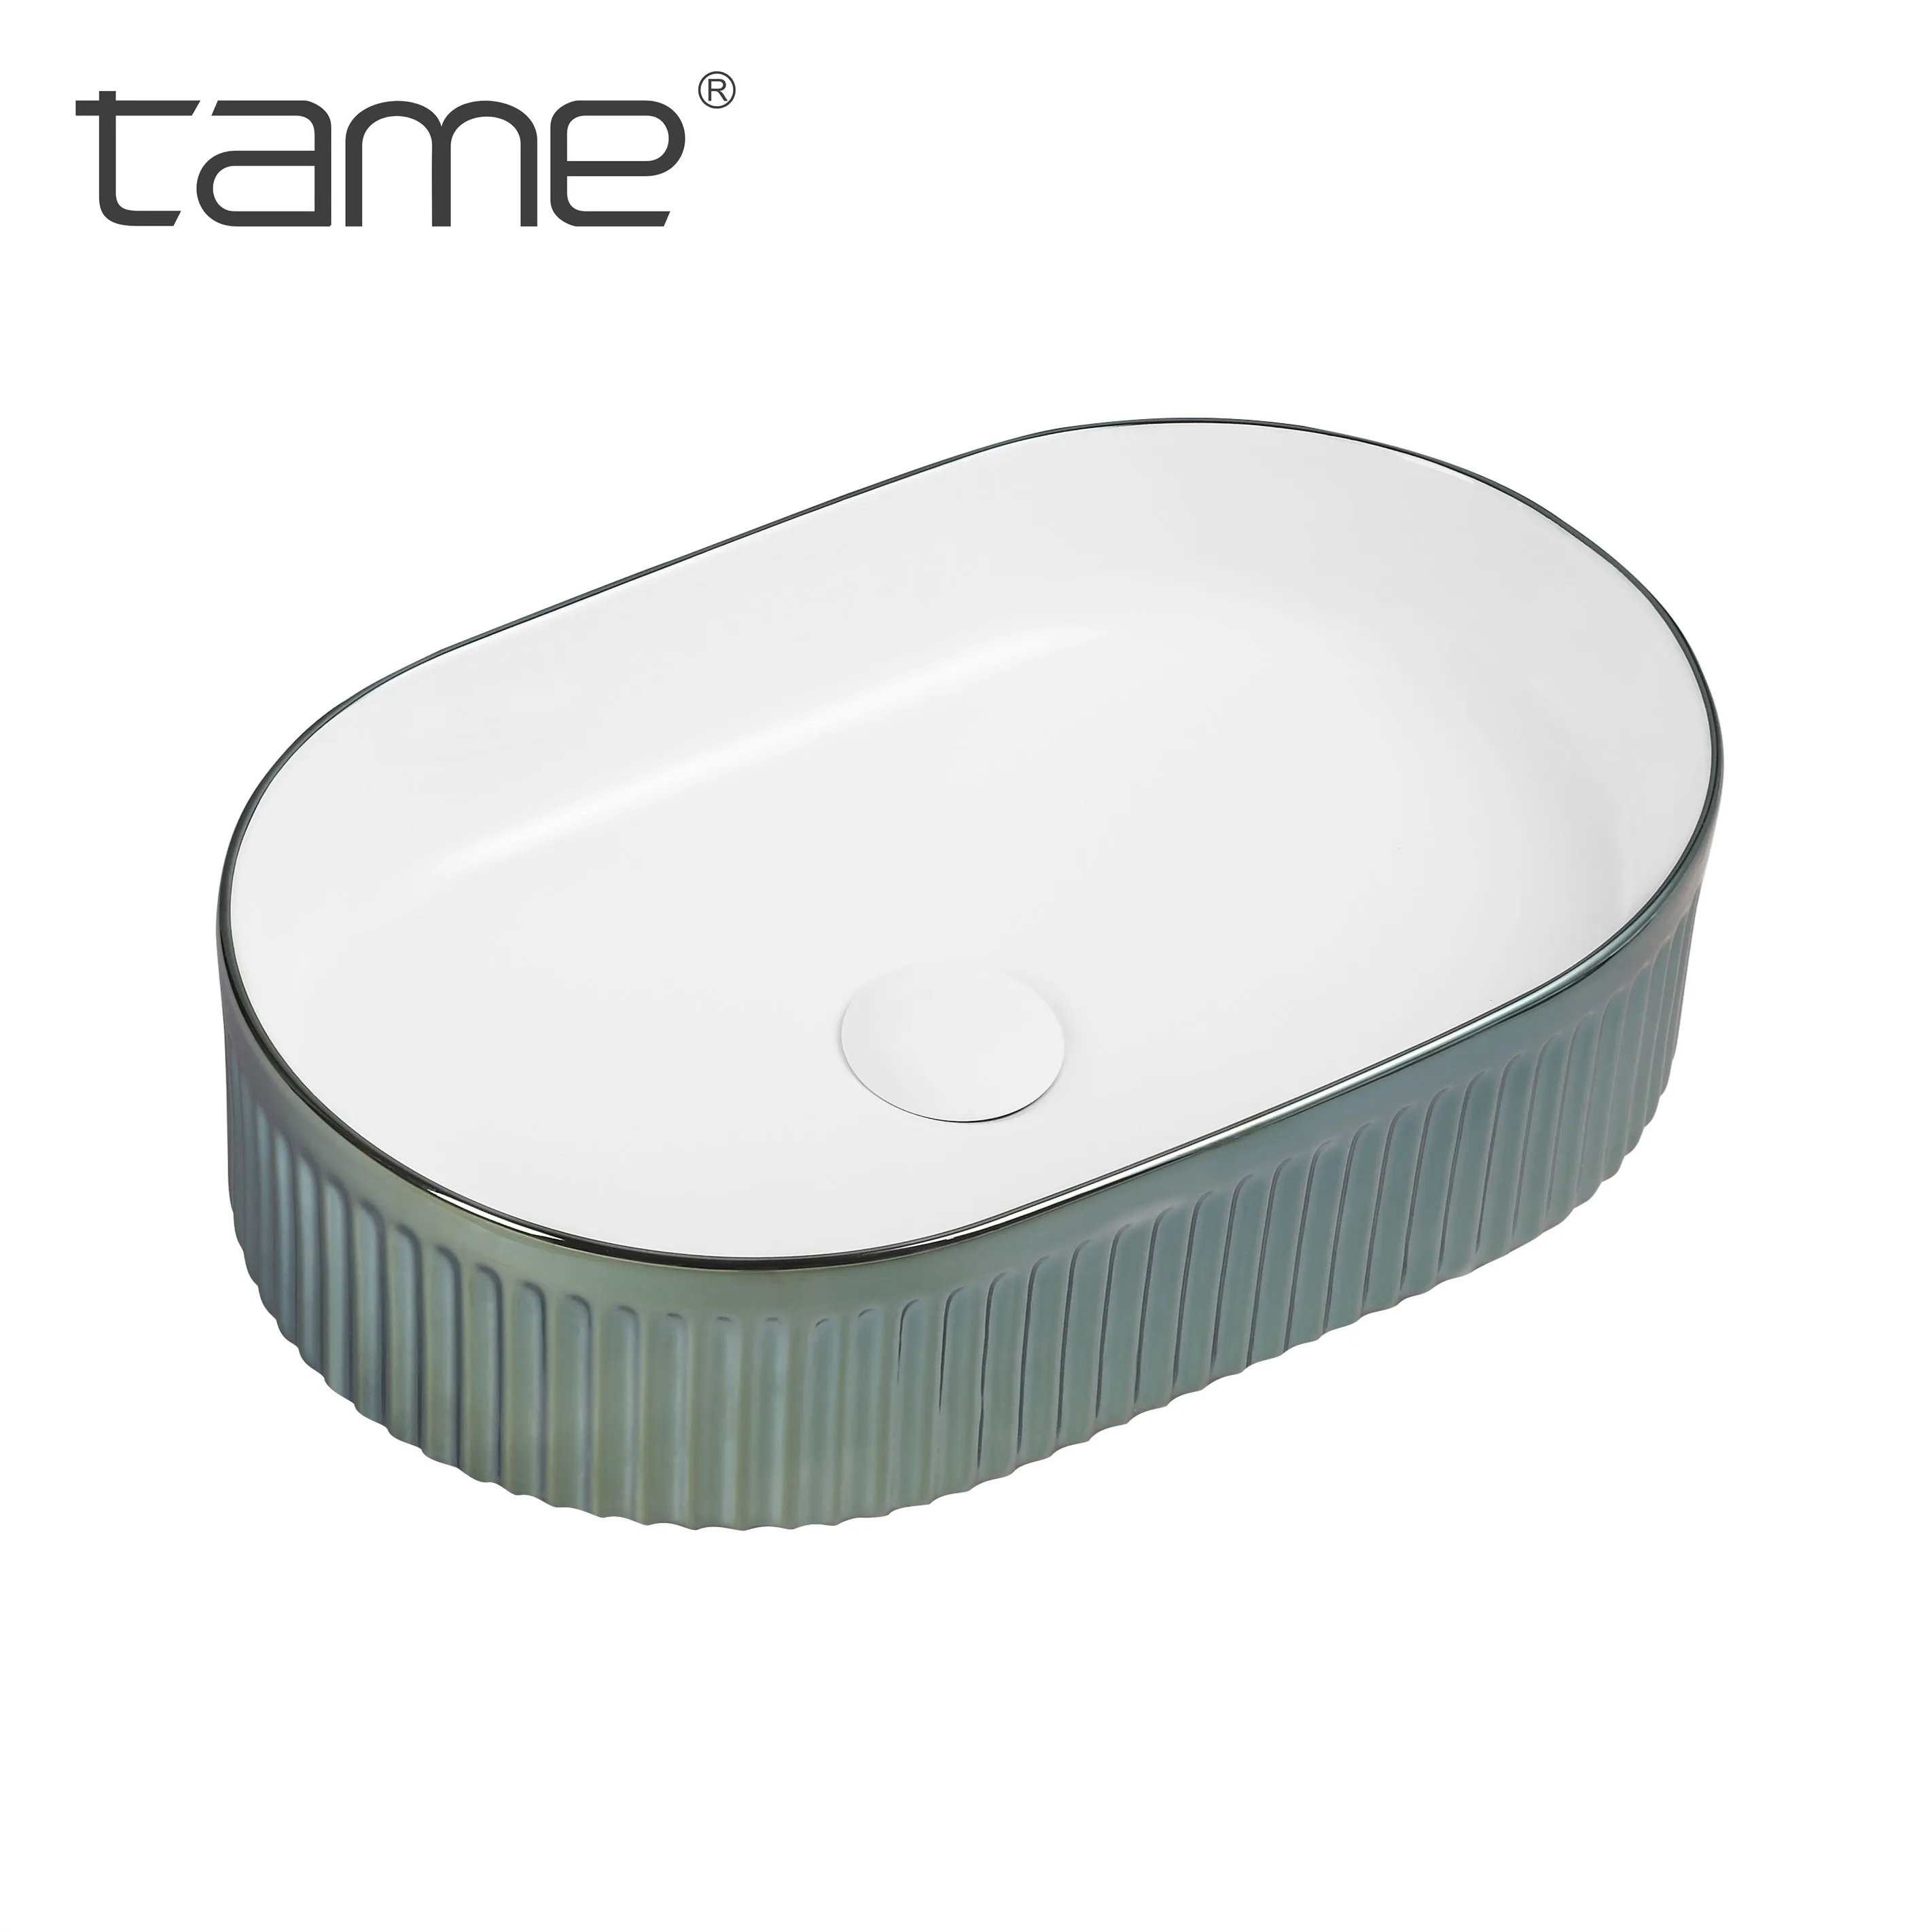 Addomesticato PZ6504-EA1 nuova creatività lussuosa ceramica placcato verde bassorilievo design ovale da banco lavabo